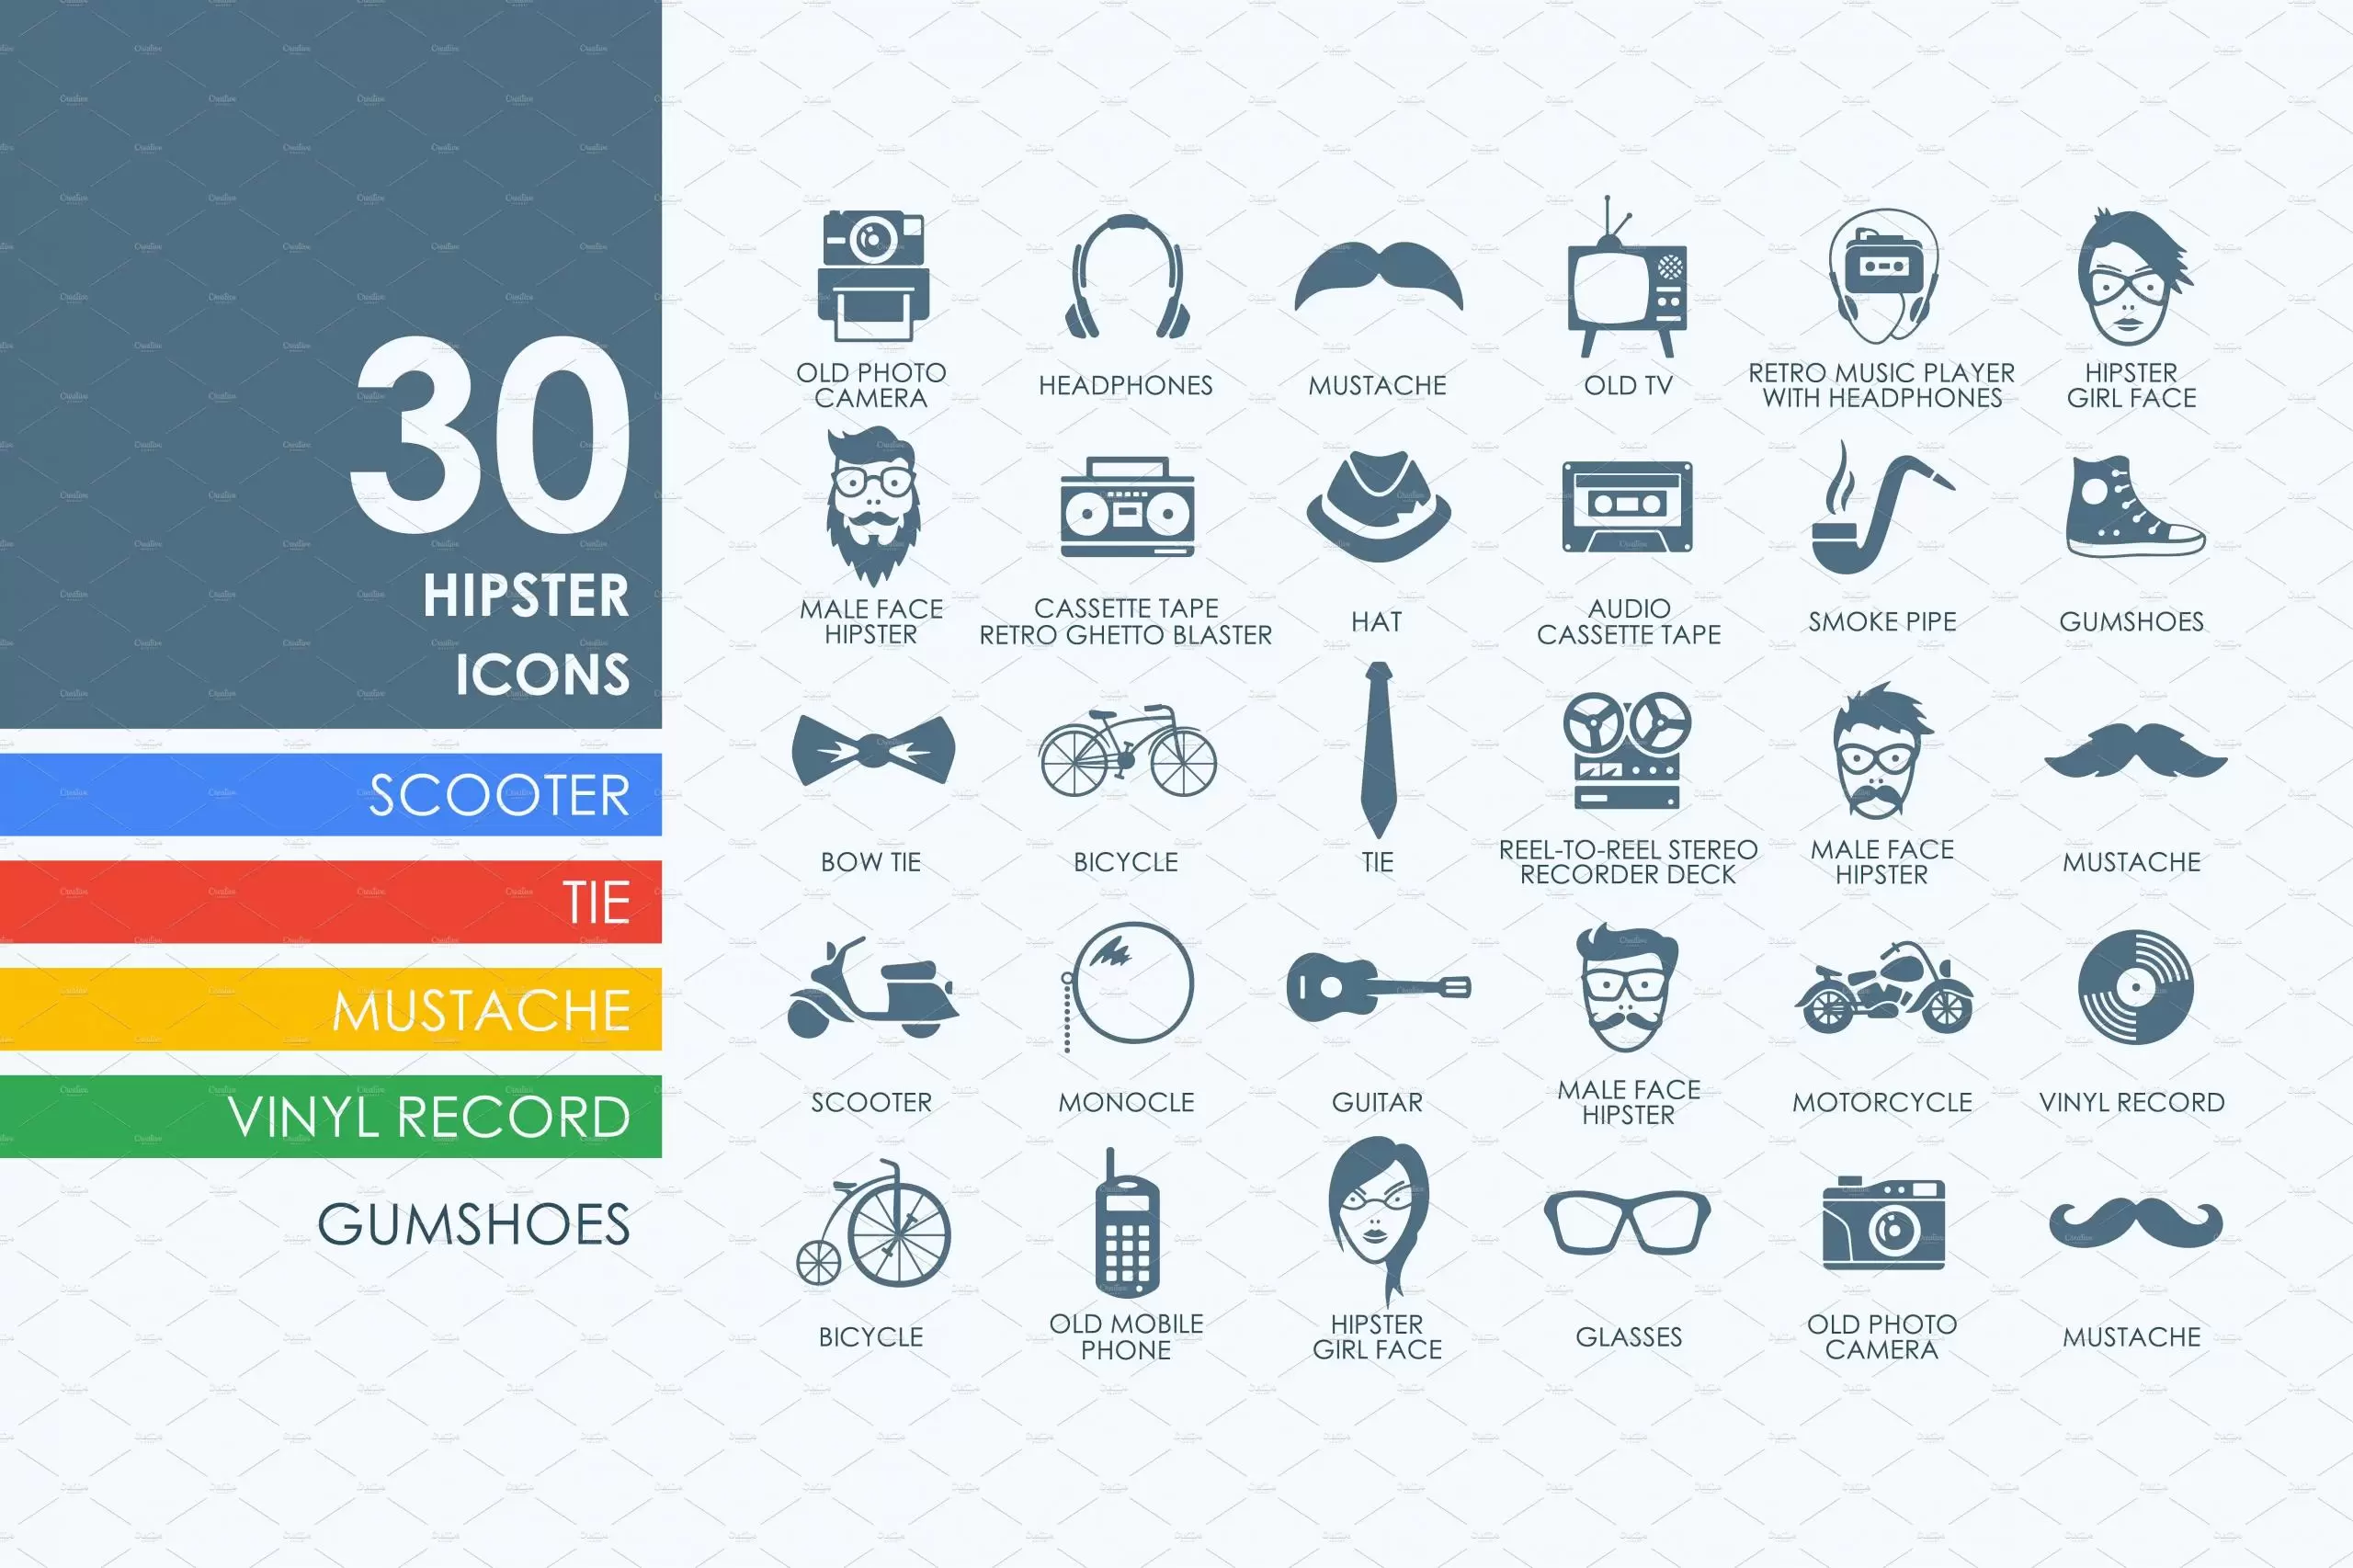 时髦图标素材 30 hipster icons插图